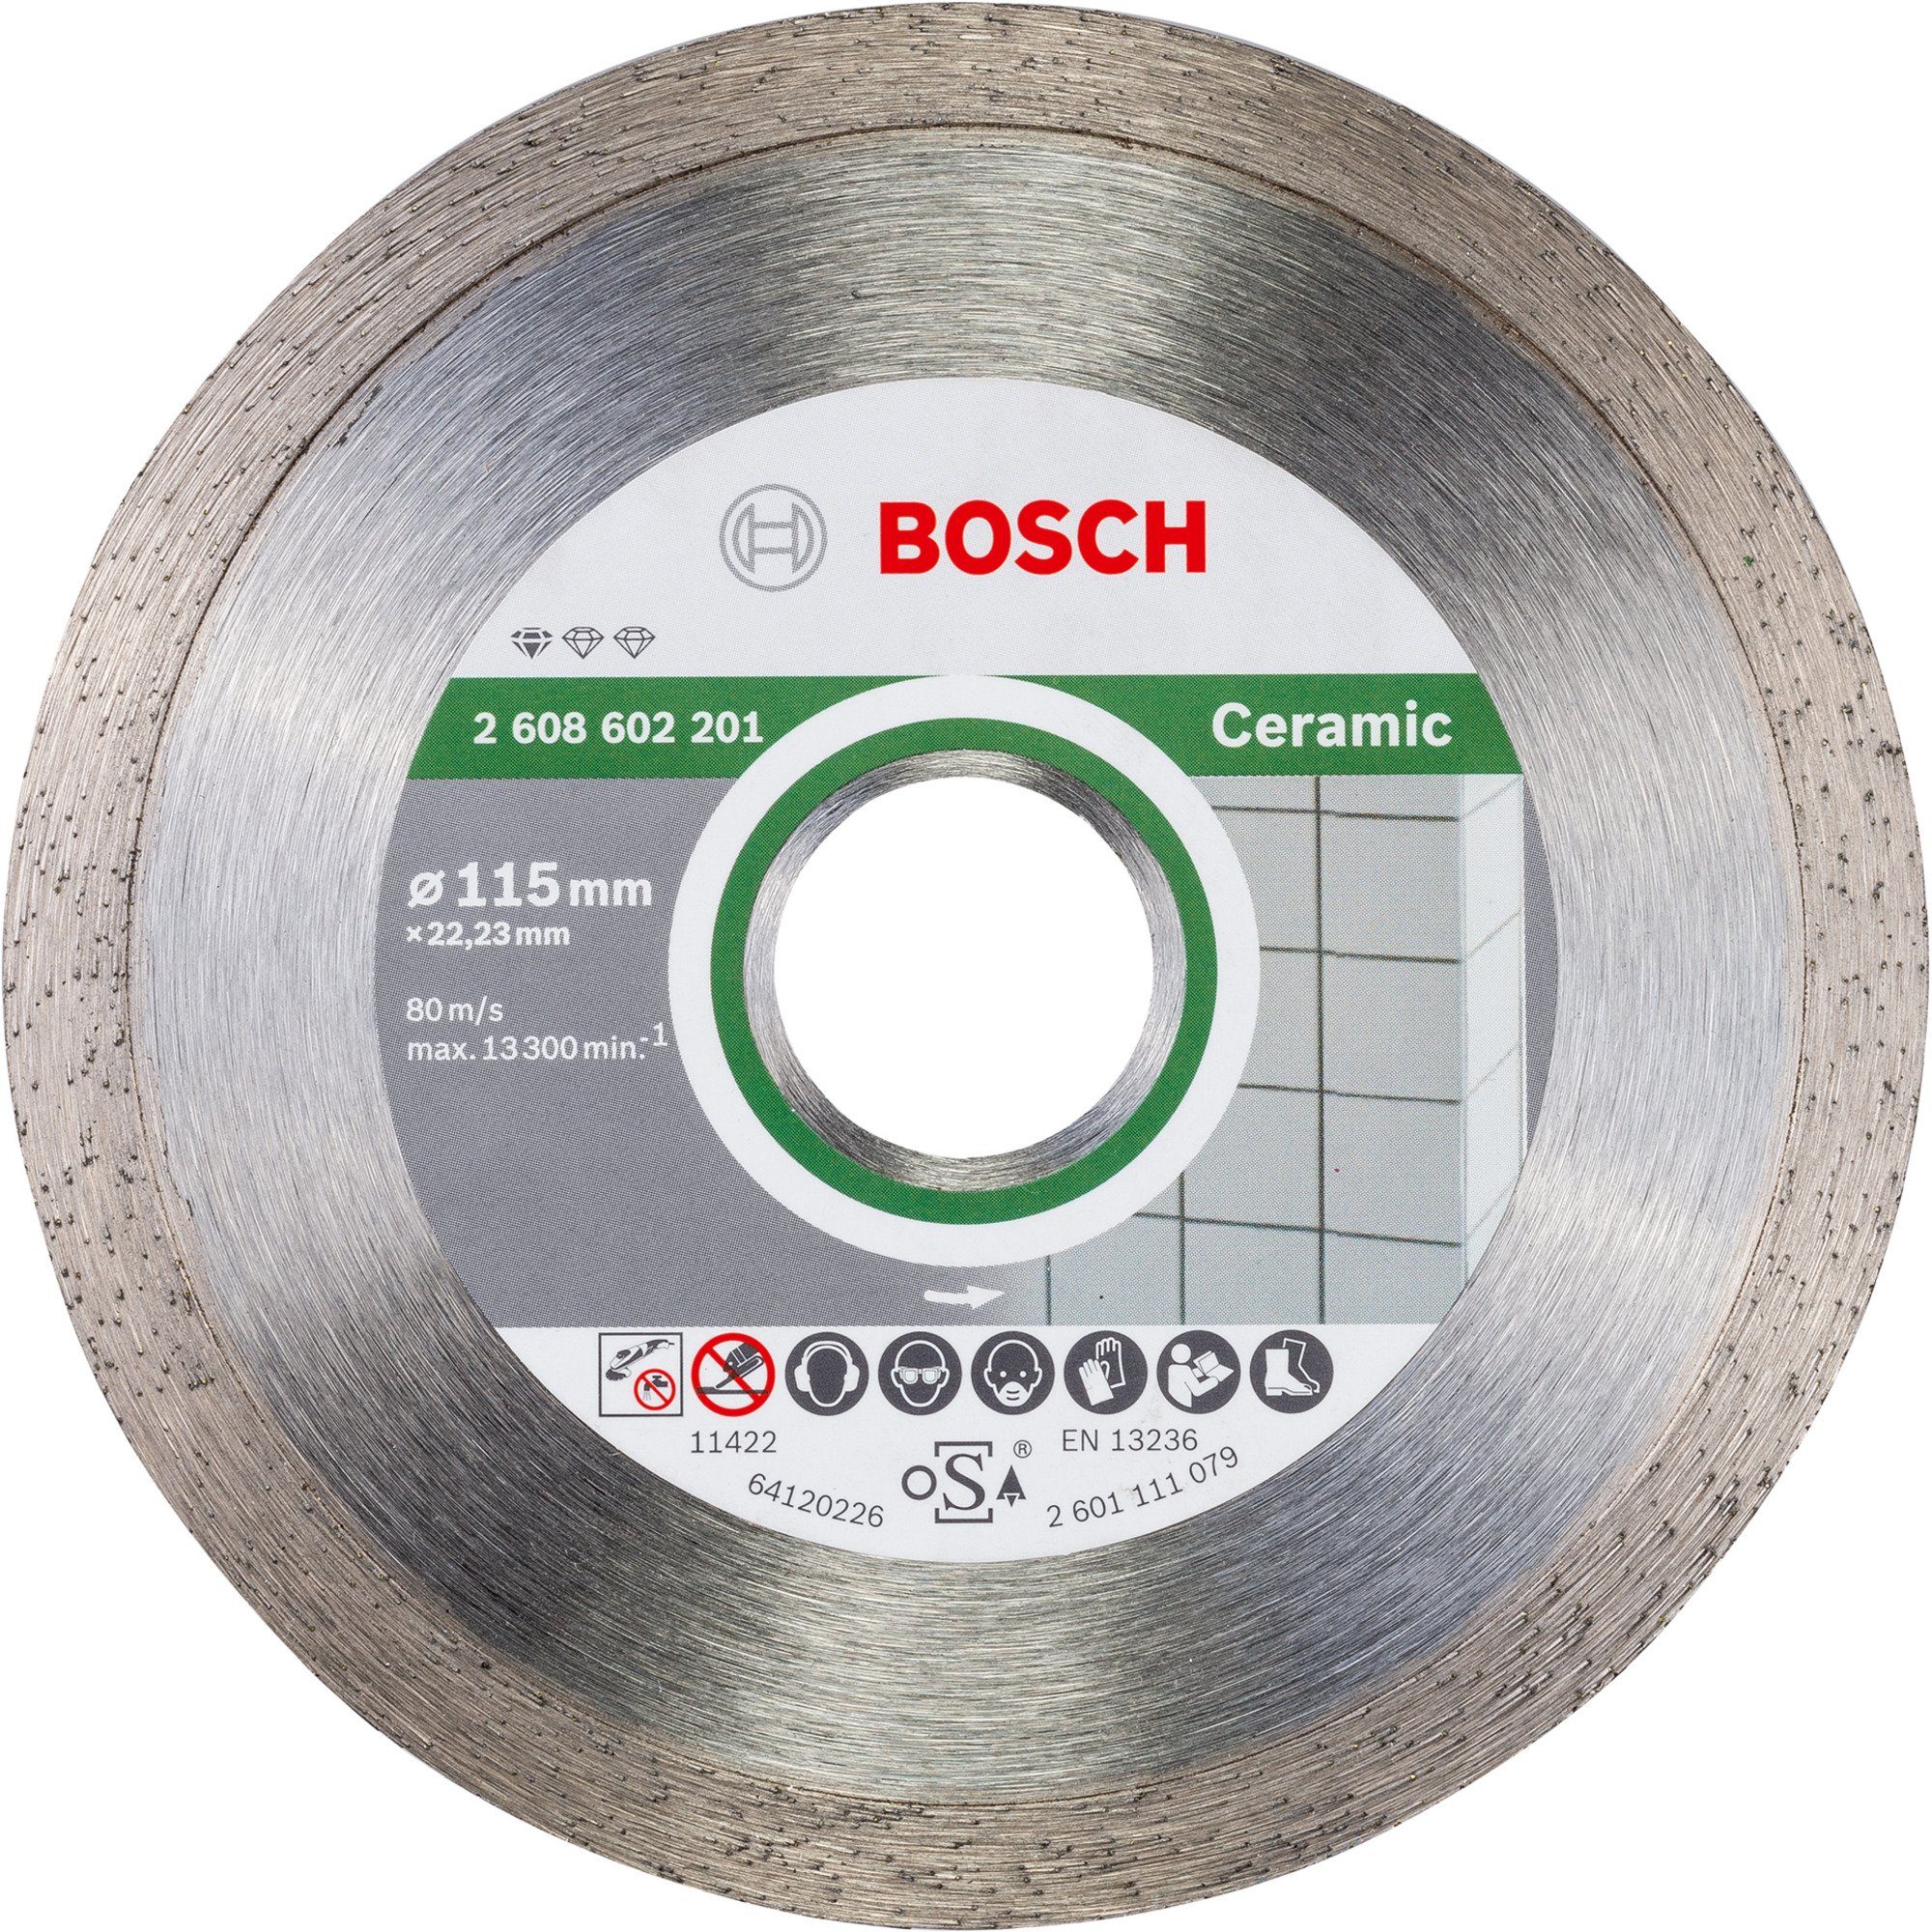 Notfallgroßer Preisnachlass BOSCH Trennscheibe Bosch Professional Diamanttrennscheibe Standard